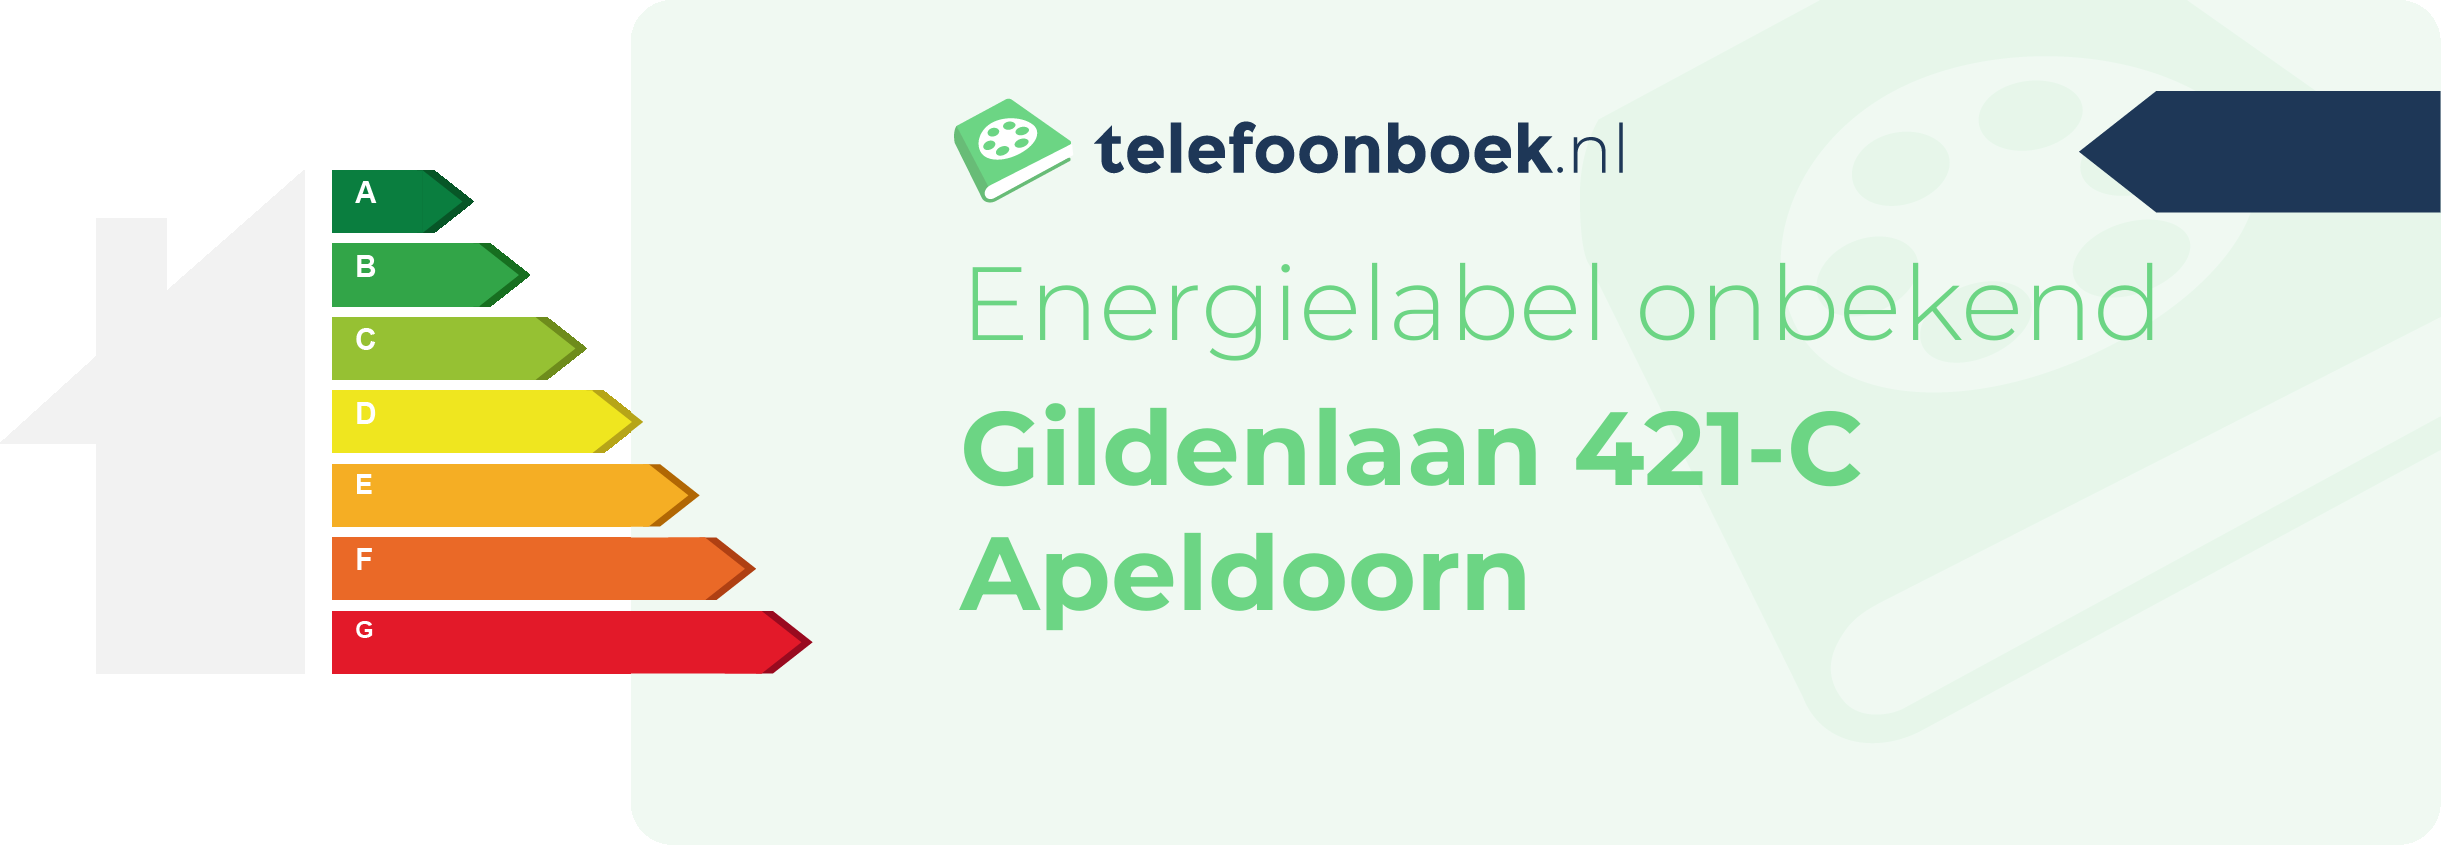 Energielabel Gildenlaan 421-C Apeldoorn